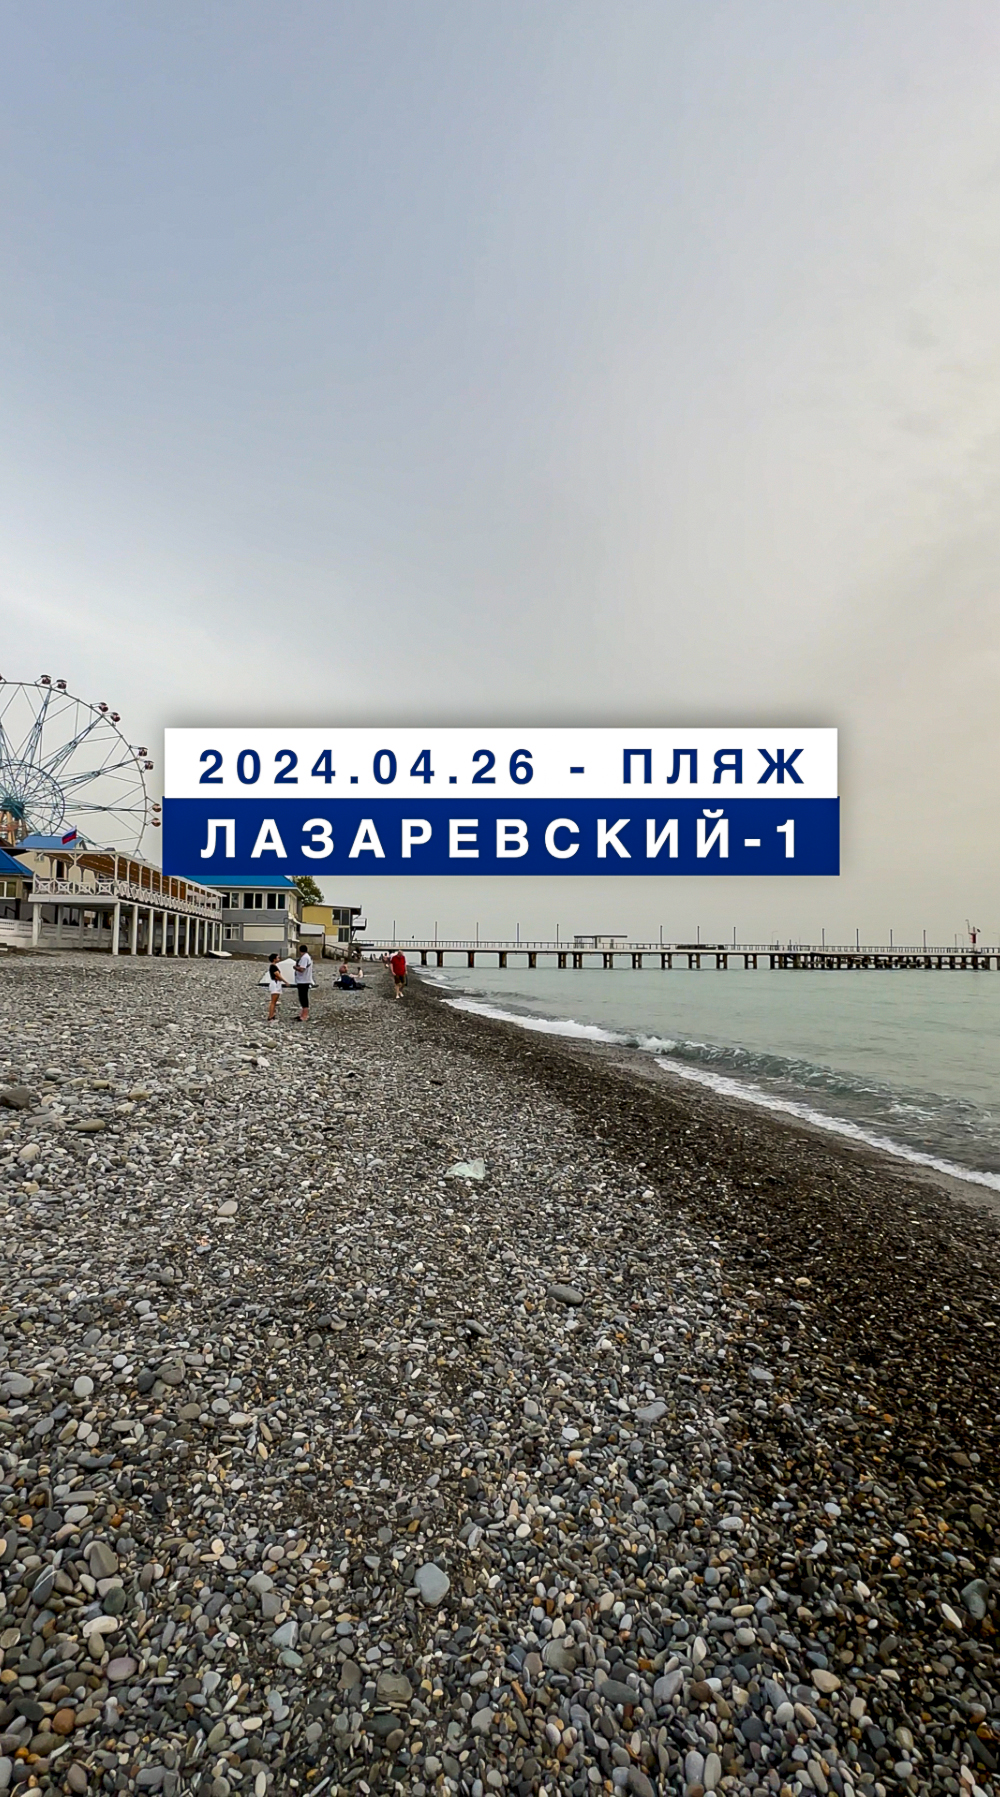 Обстановка на море в Лазаревском 26 апреля 2024, пляж Лазаревский-1.